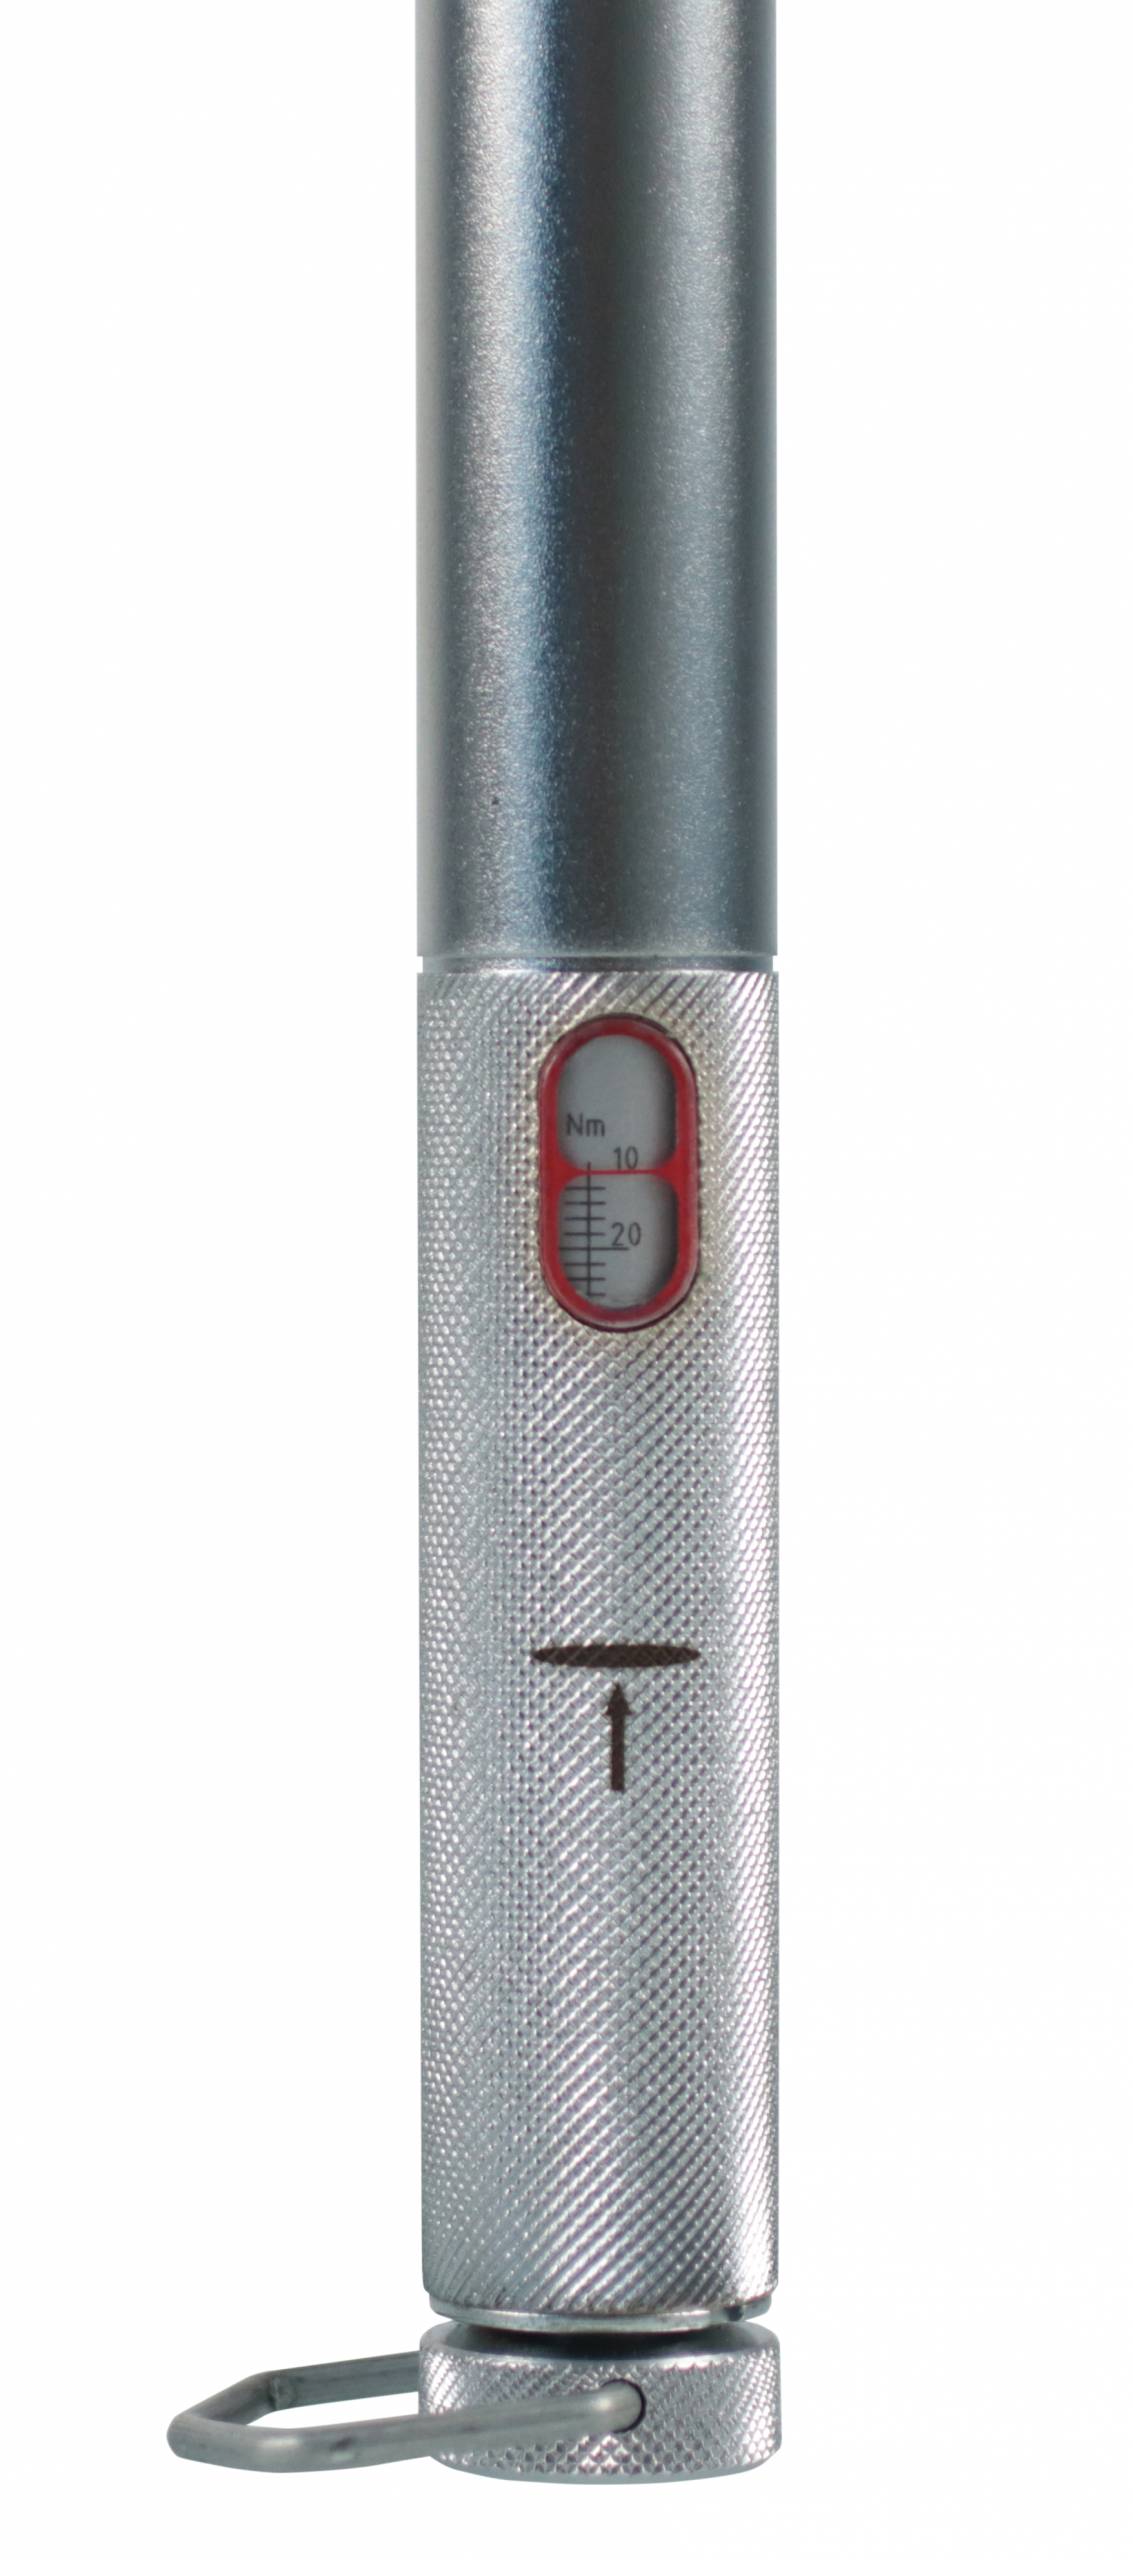 Giustaforza 10-60 Pro - Torque wrench